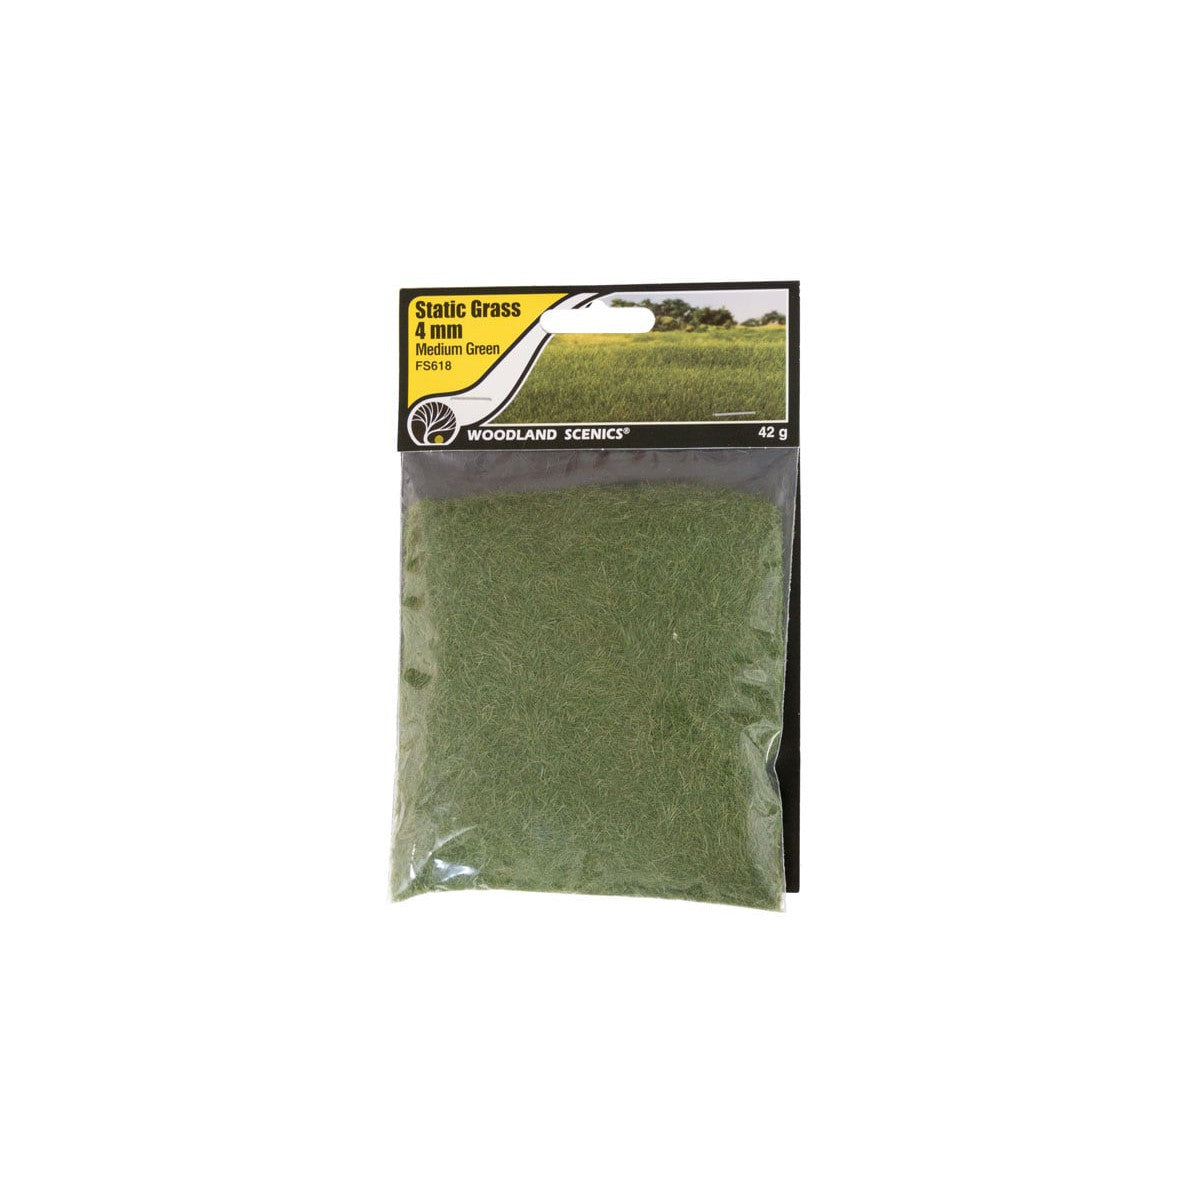 Woodland Scenics FS618 -- 4mm Static Grass Medium Green